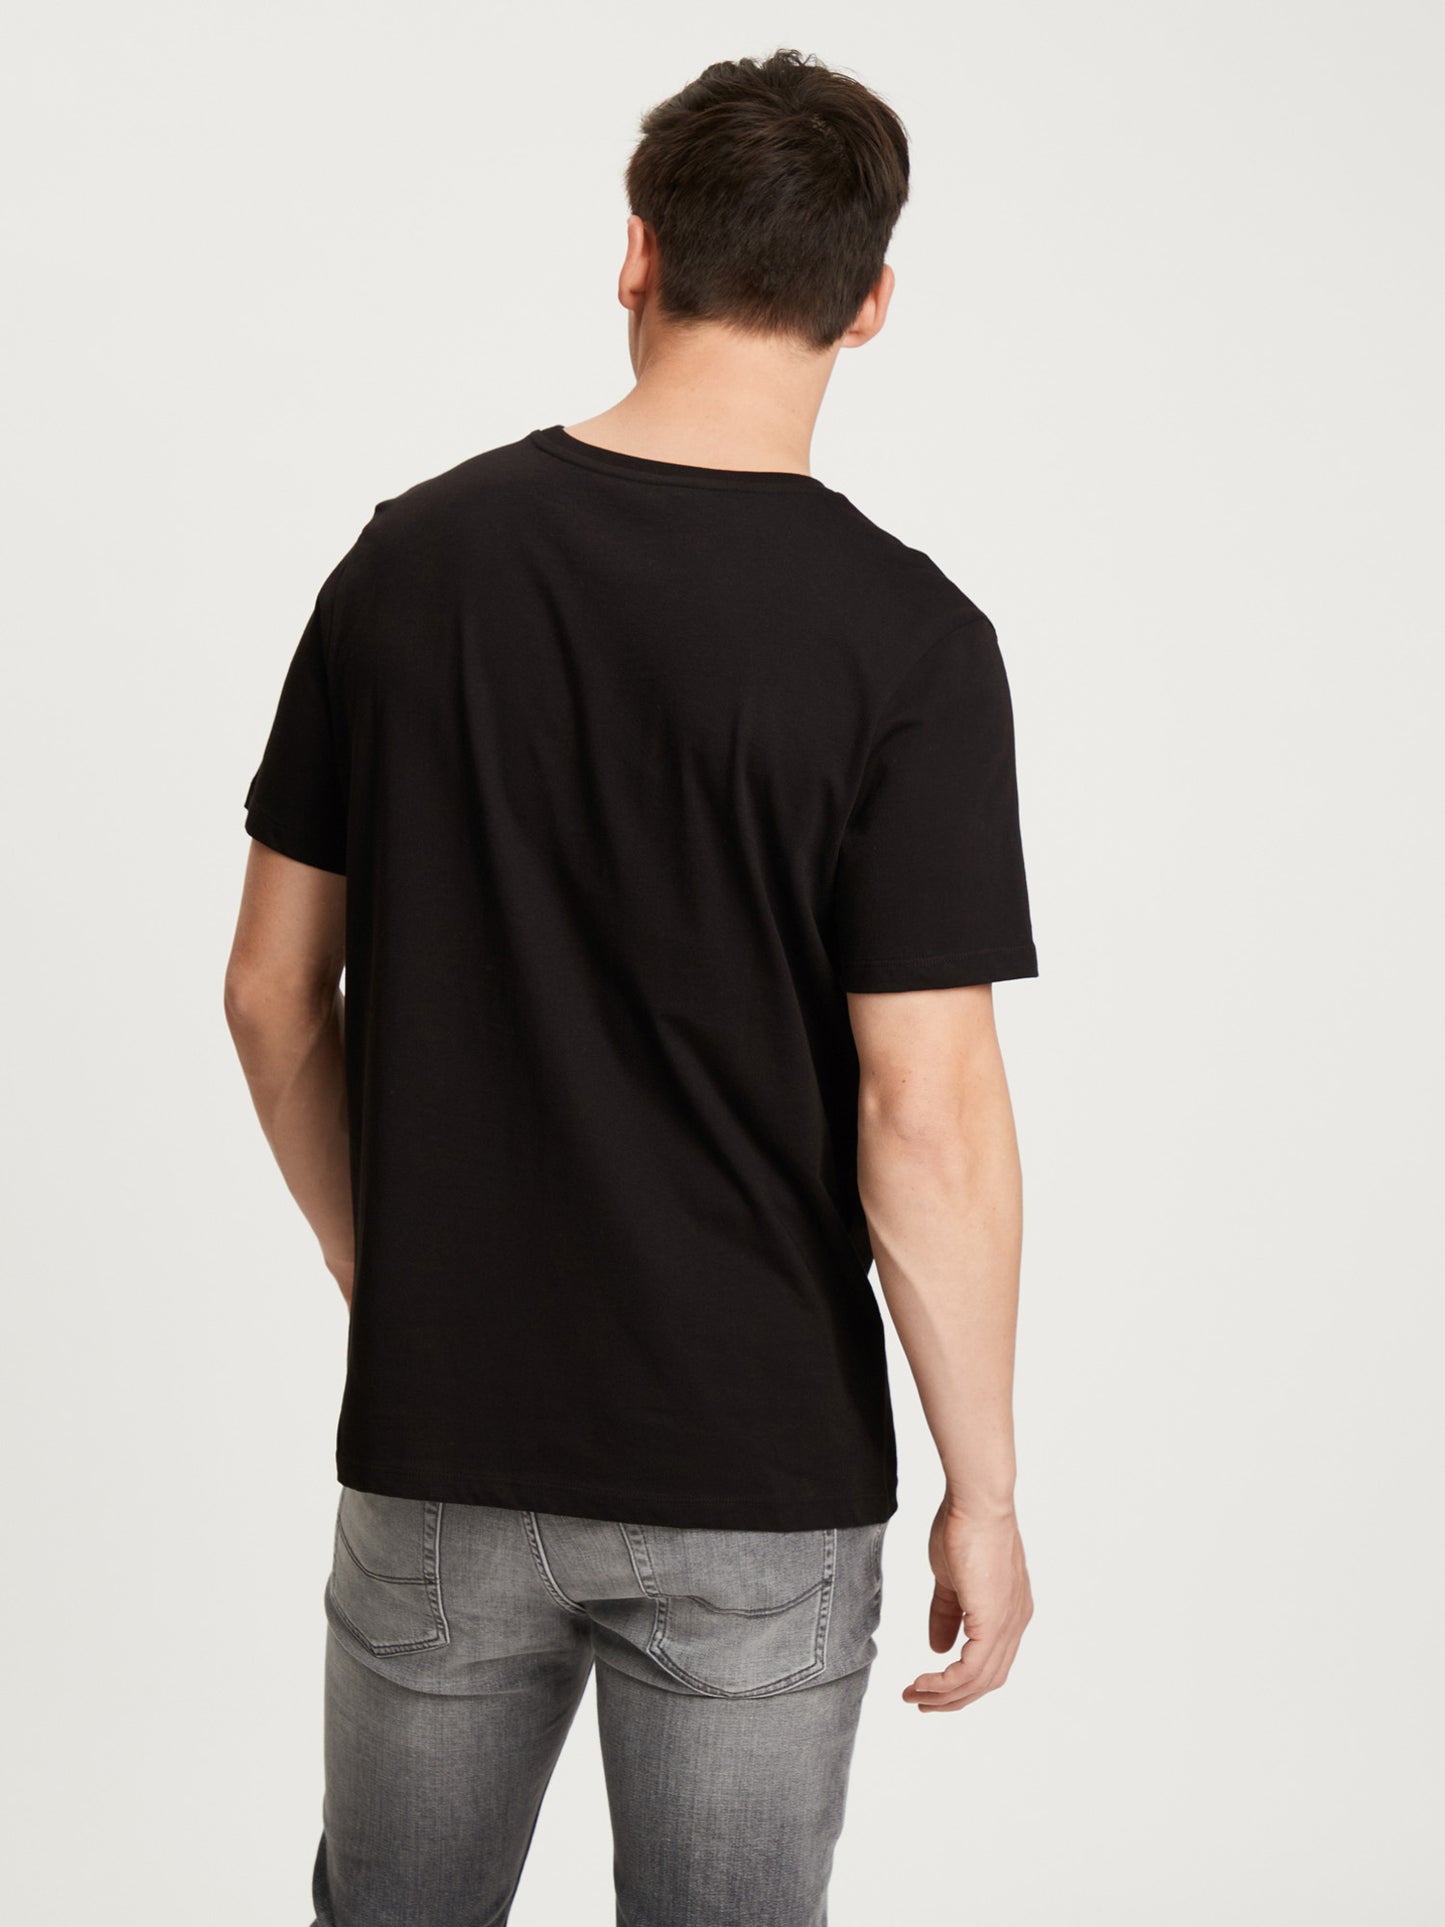 Herren Regular T-Shirt mit Print schwarz.